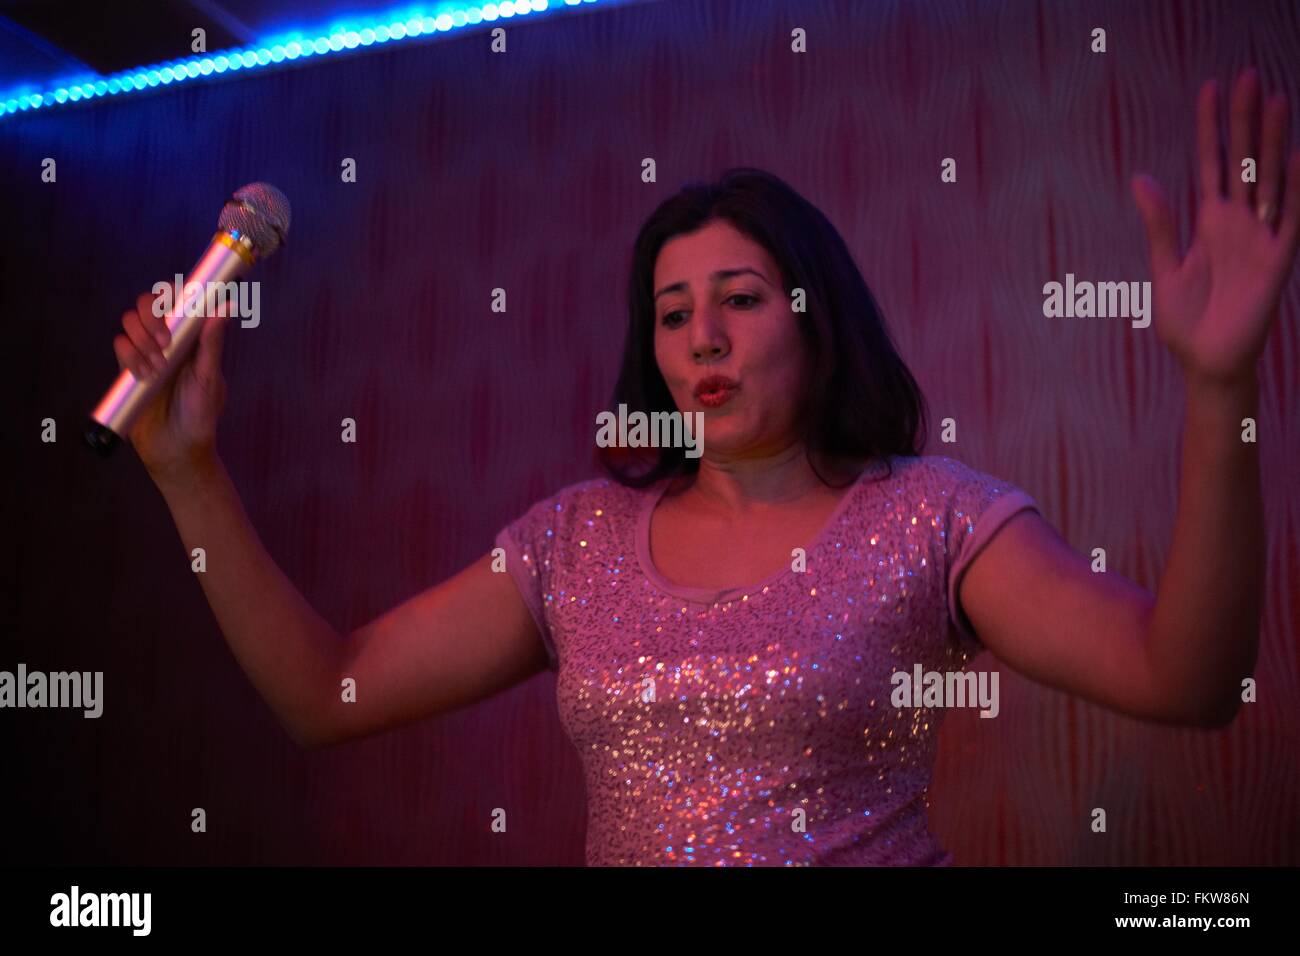 Woman singing karaoke Stock Photo